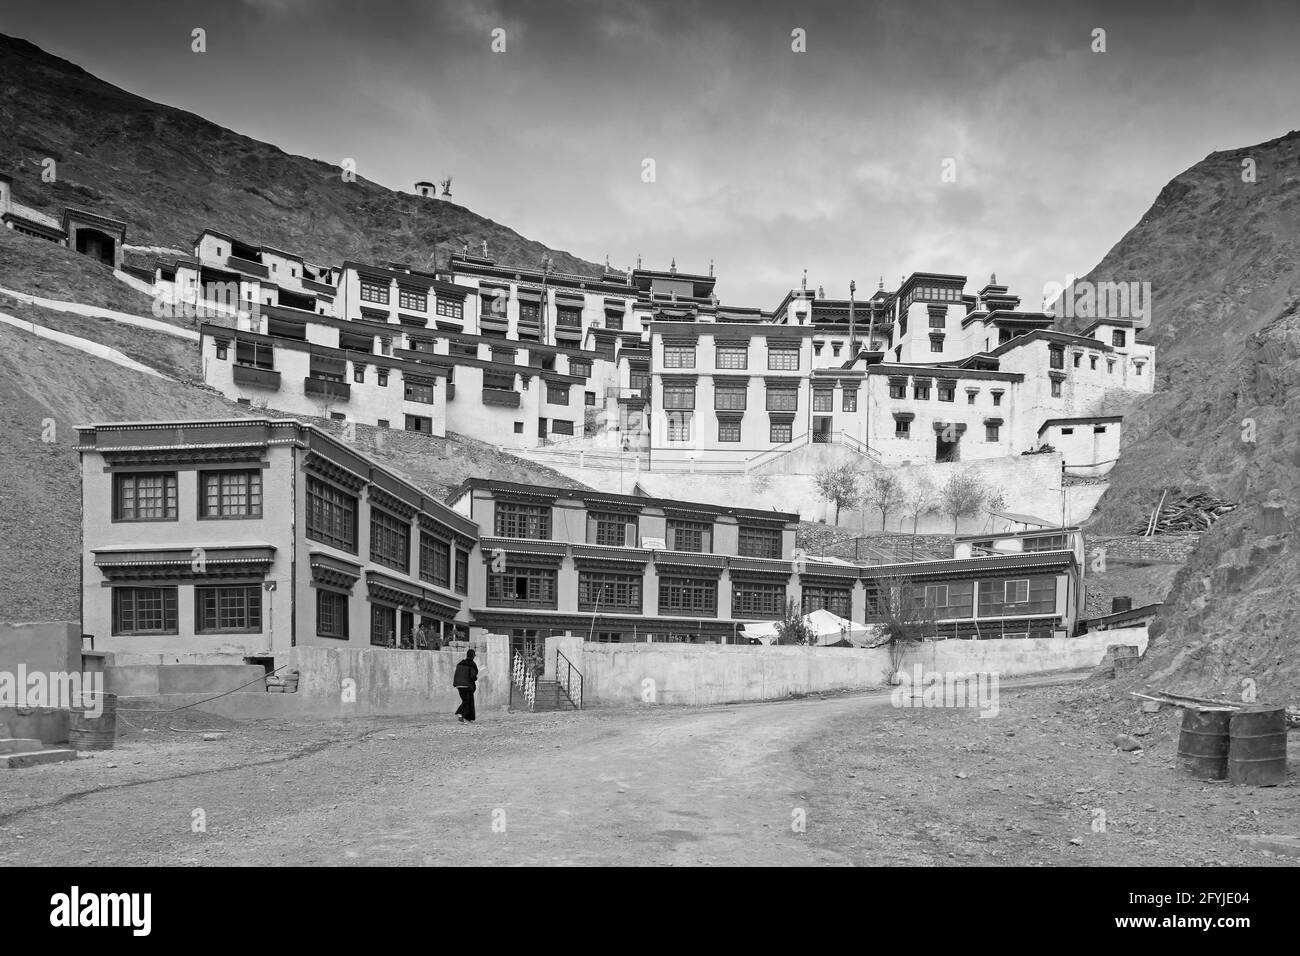 Rizong Kloster mit Blick auf Himalaya-Berge - es ist ein berühmter buddhistischer Tempel in,Leh, Ladakh, Jammu und Kaschmir, Indien. Schwarzweiß-Bild. Stockfoto